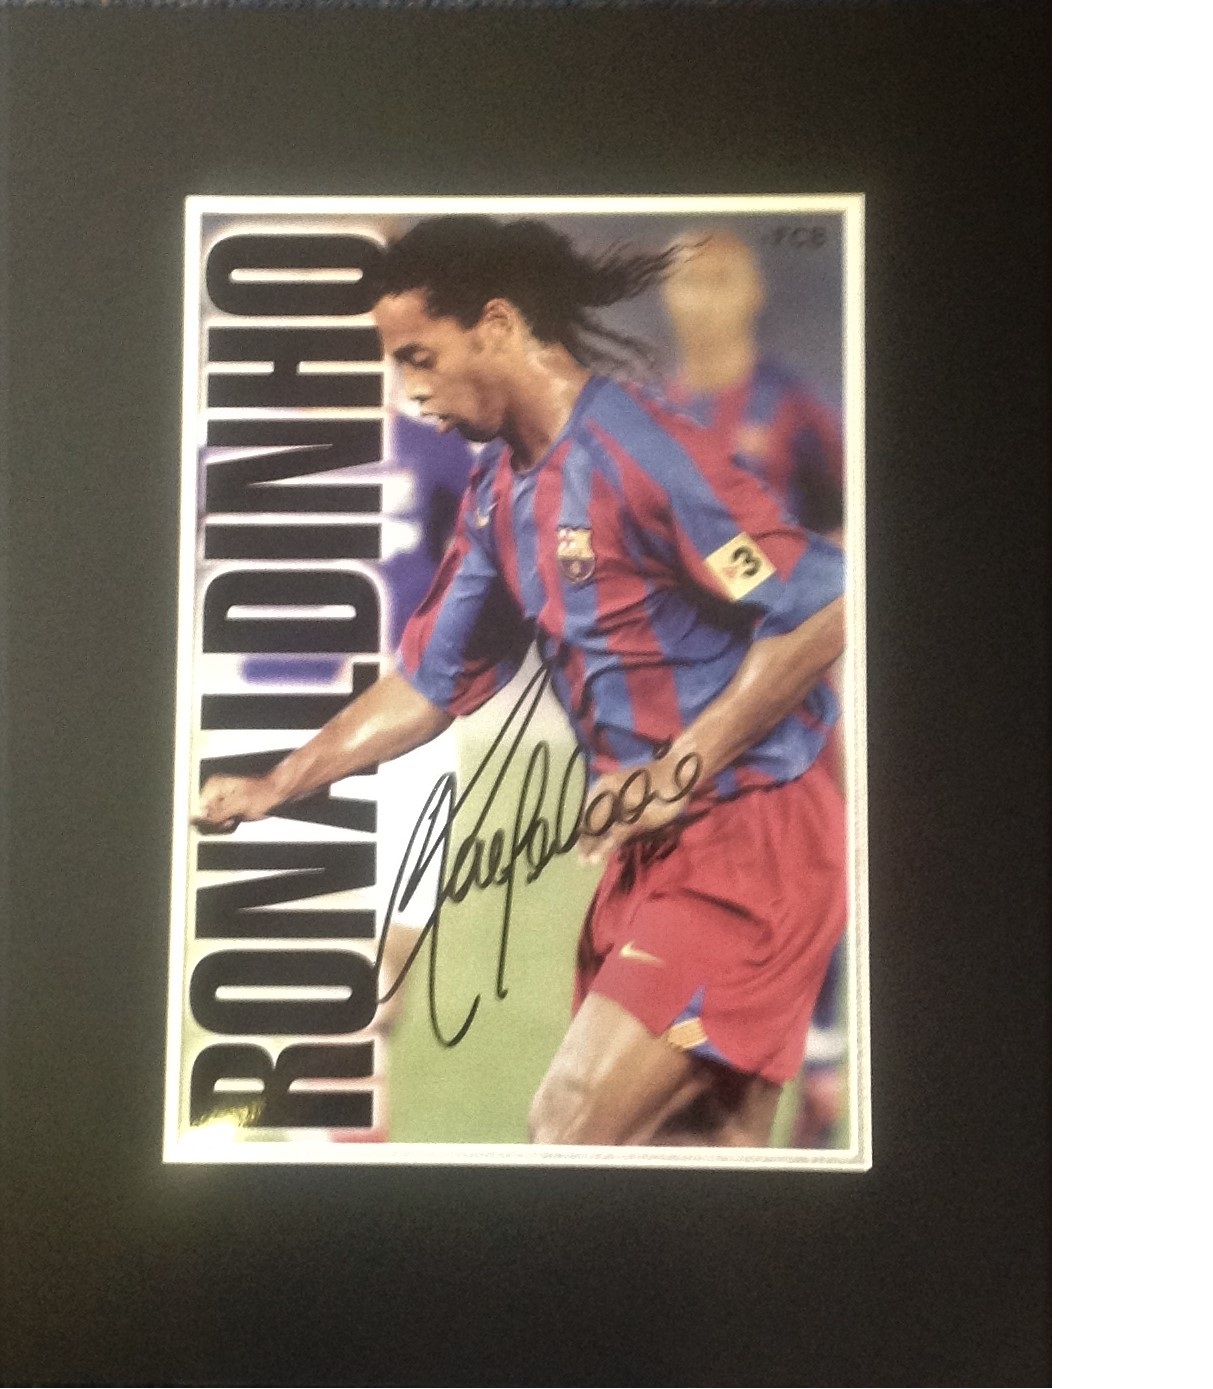 Football Ronaldinho signed 20x16 mounted signature piece. Ronaldo de Assis Moreira (born 21 March